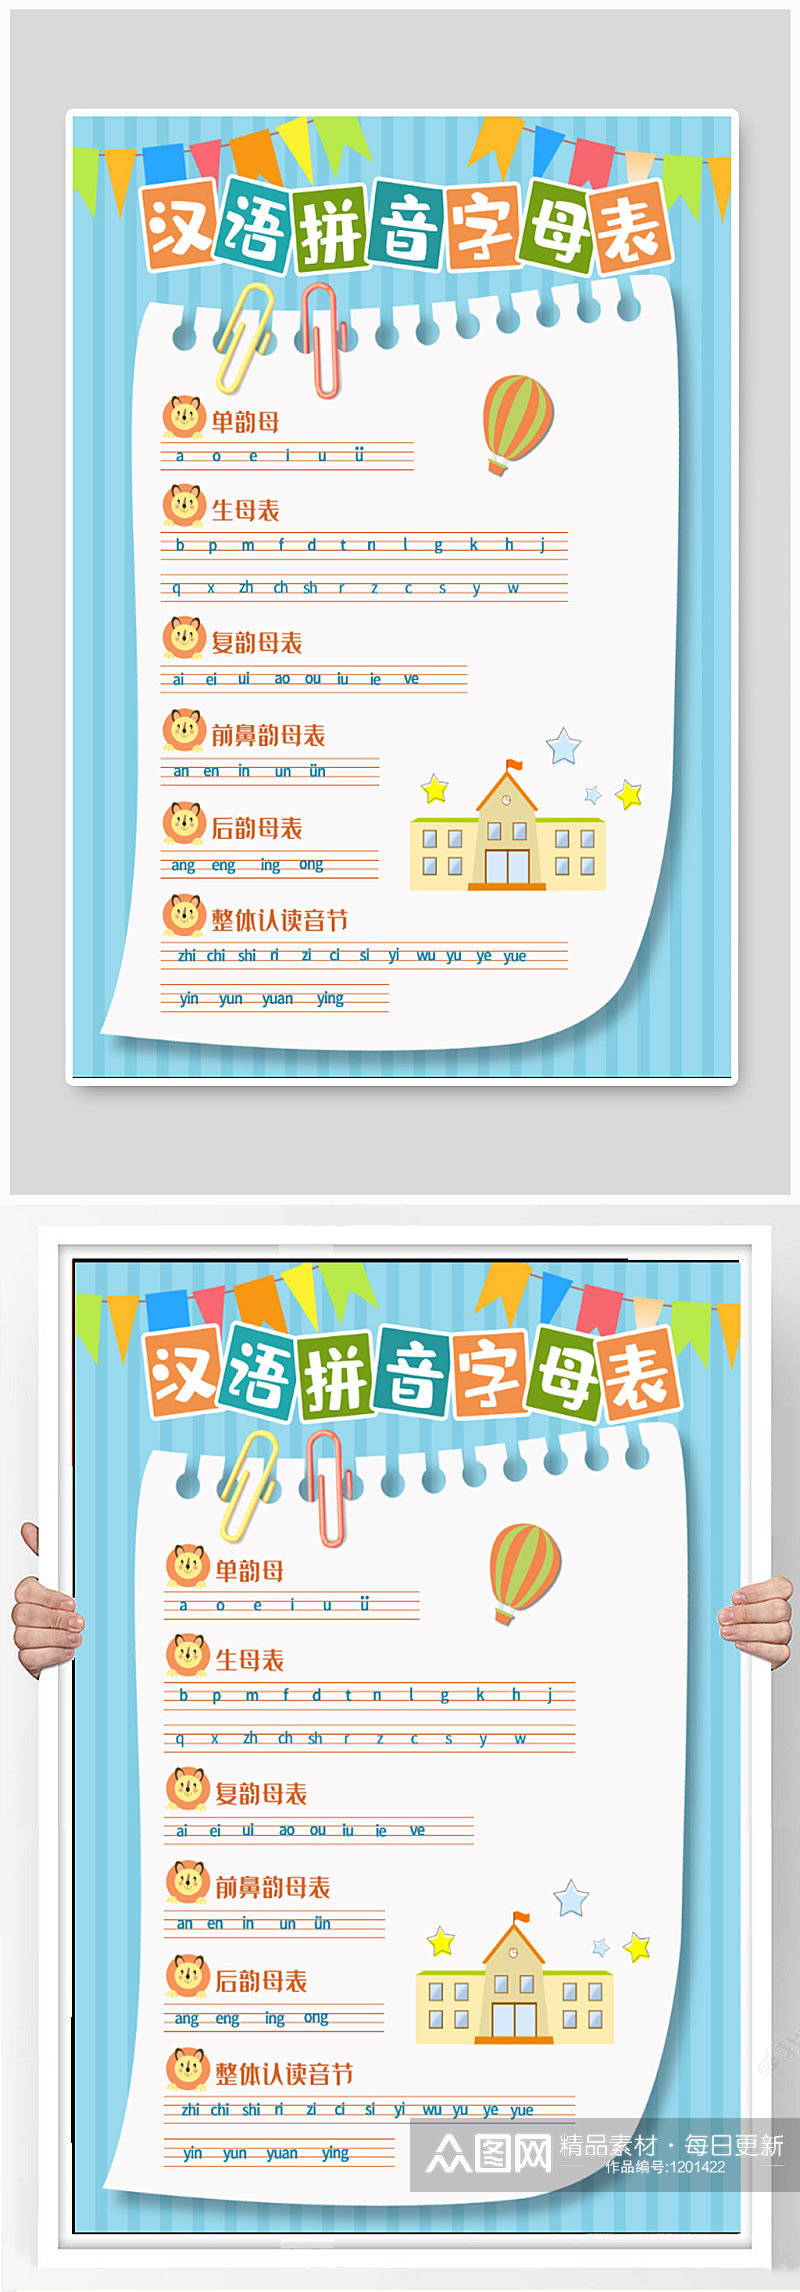 汉语拼音字母表海报素材